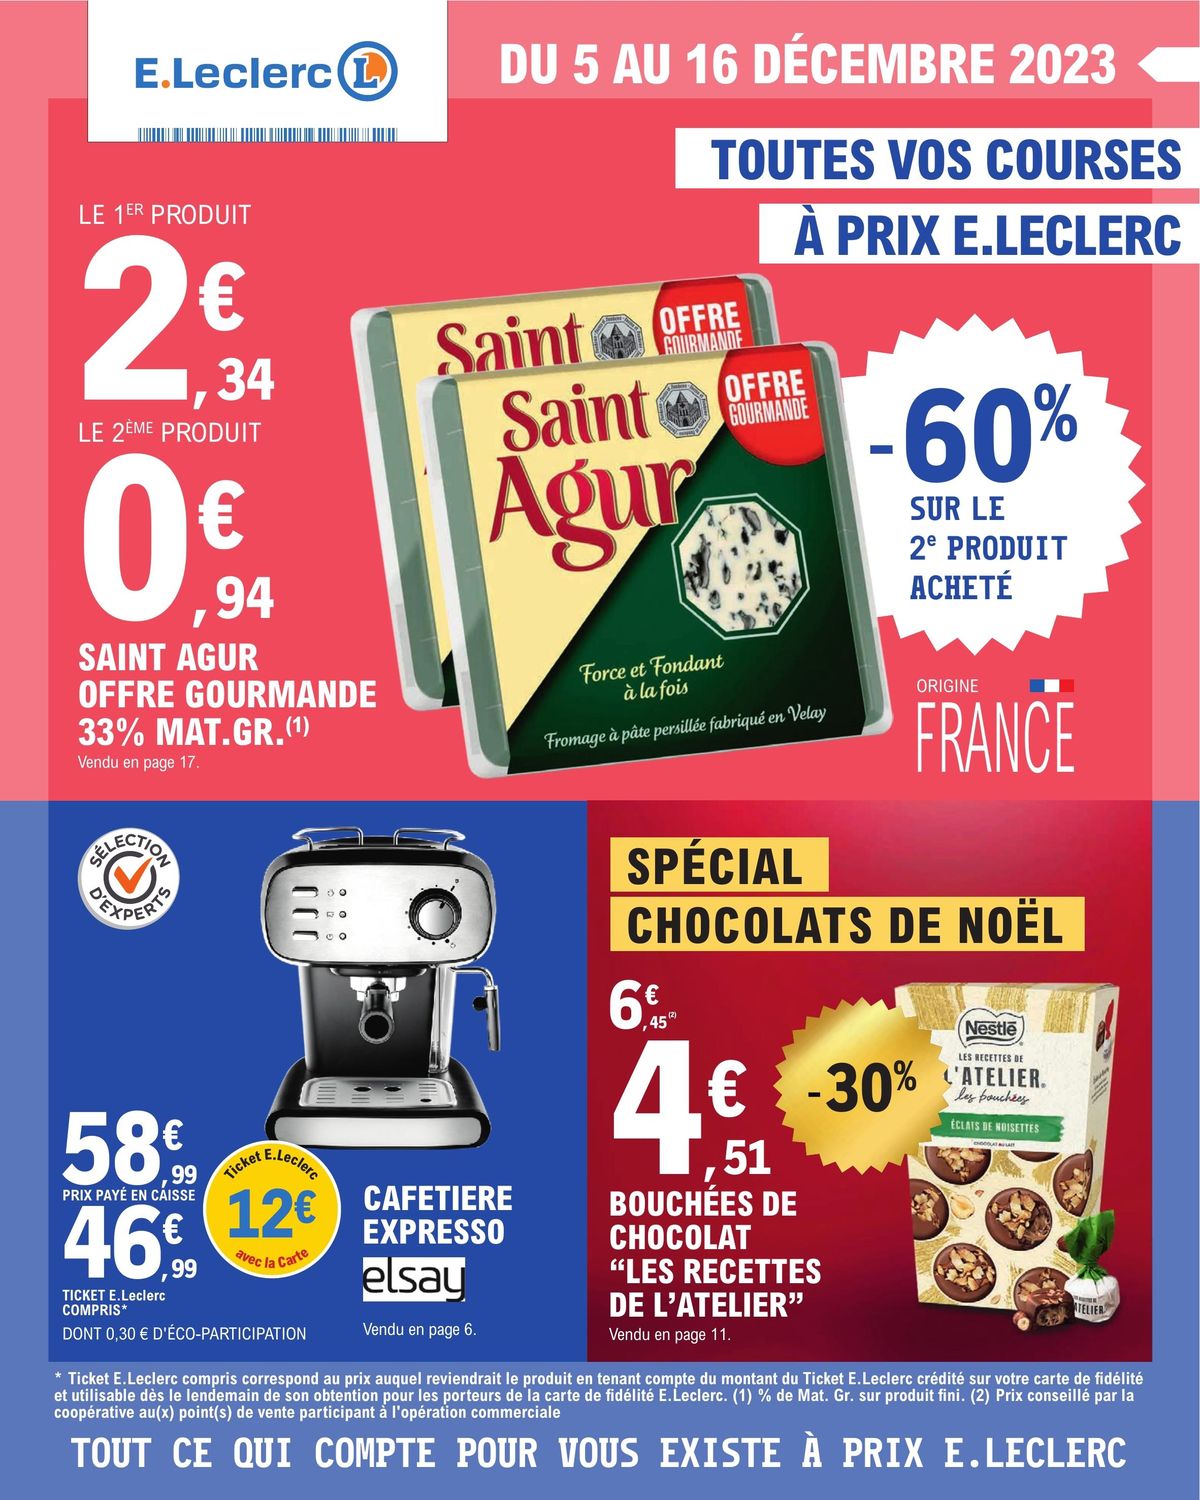 Catalogue Toutes vos courses à prix E.Leclerc, page 00001